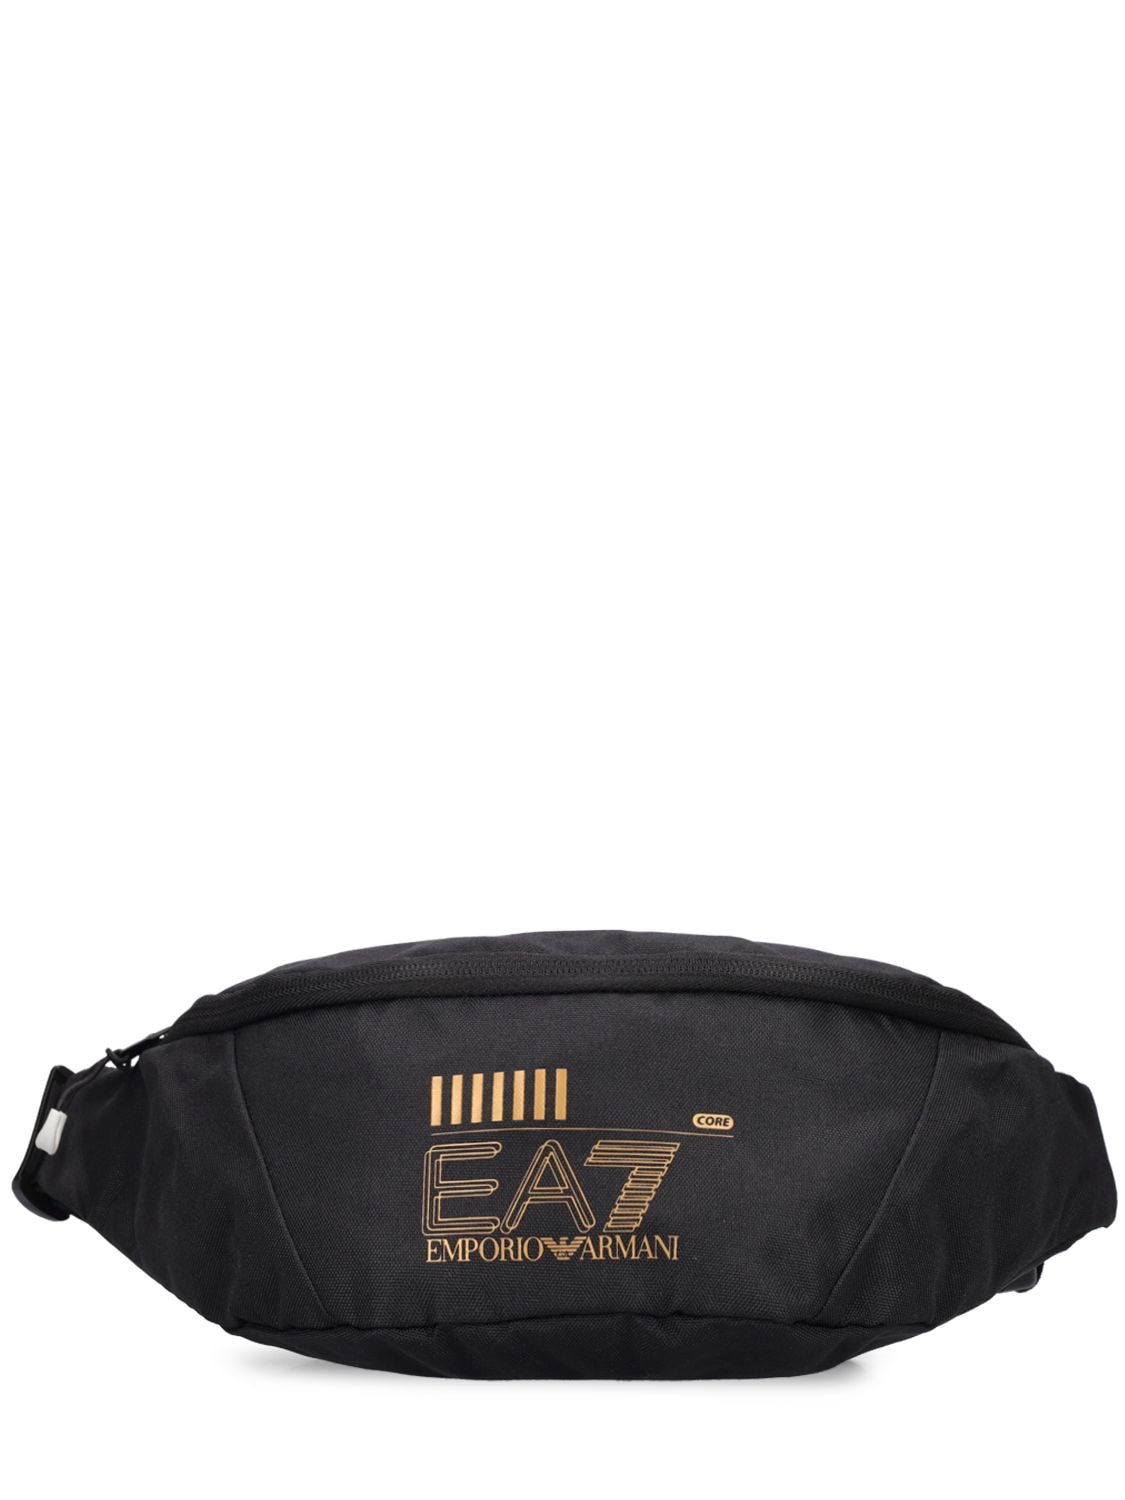 Core Identity Belt Bag - EA7 EMPORIO ARMANI - Modalova